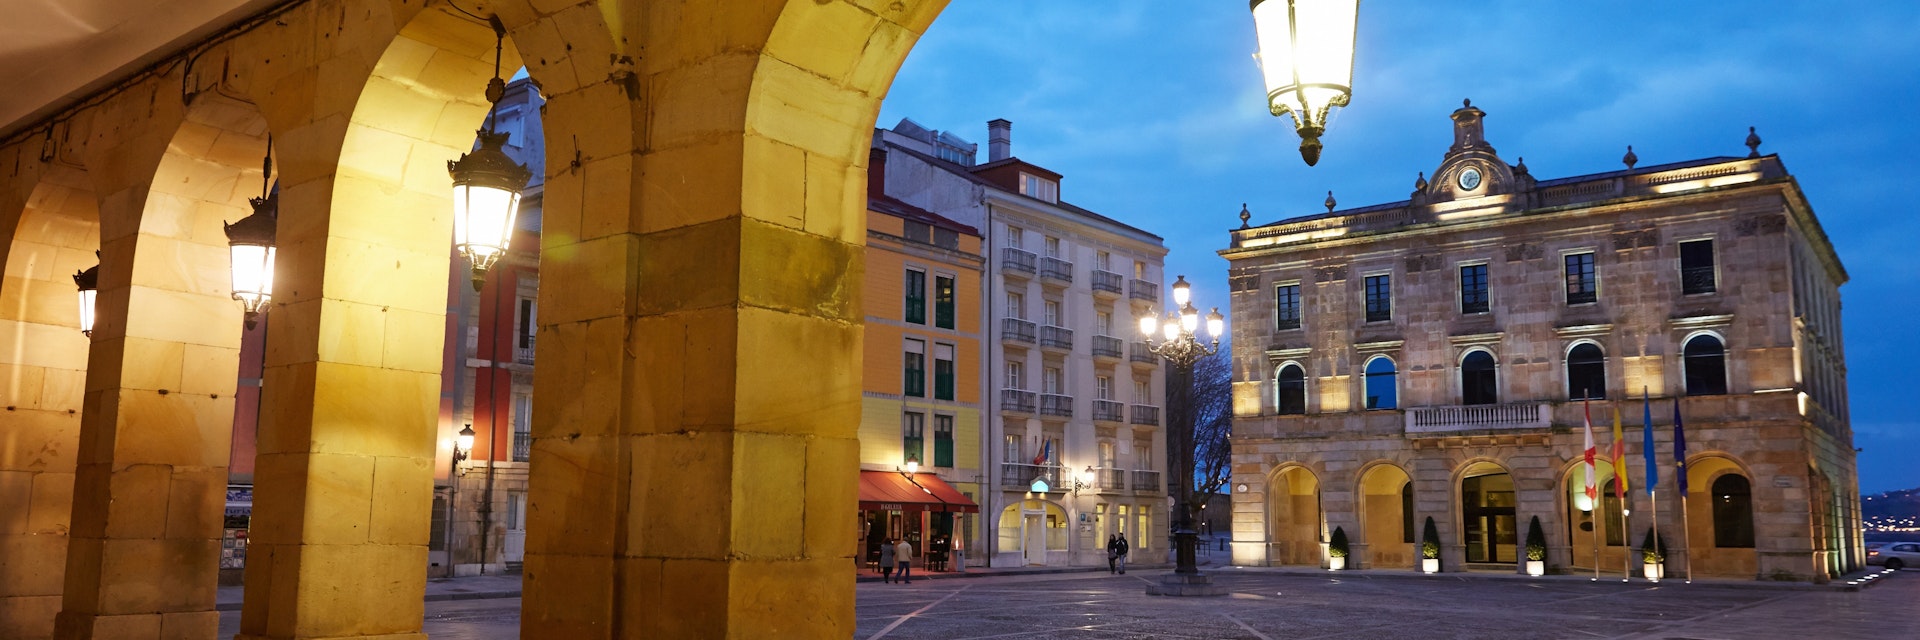 Main Square and Town Hall, Plaza Mayor, Gijon, Asturias, Spain